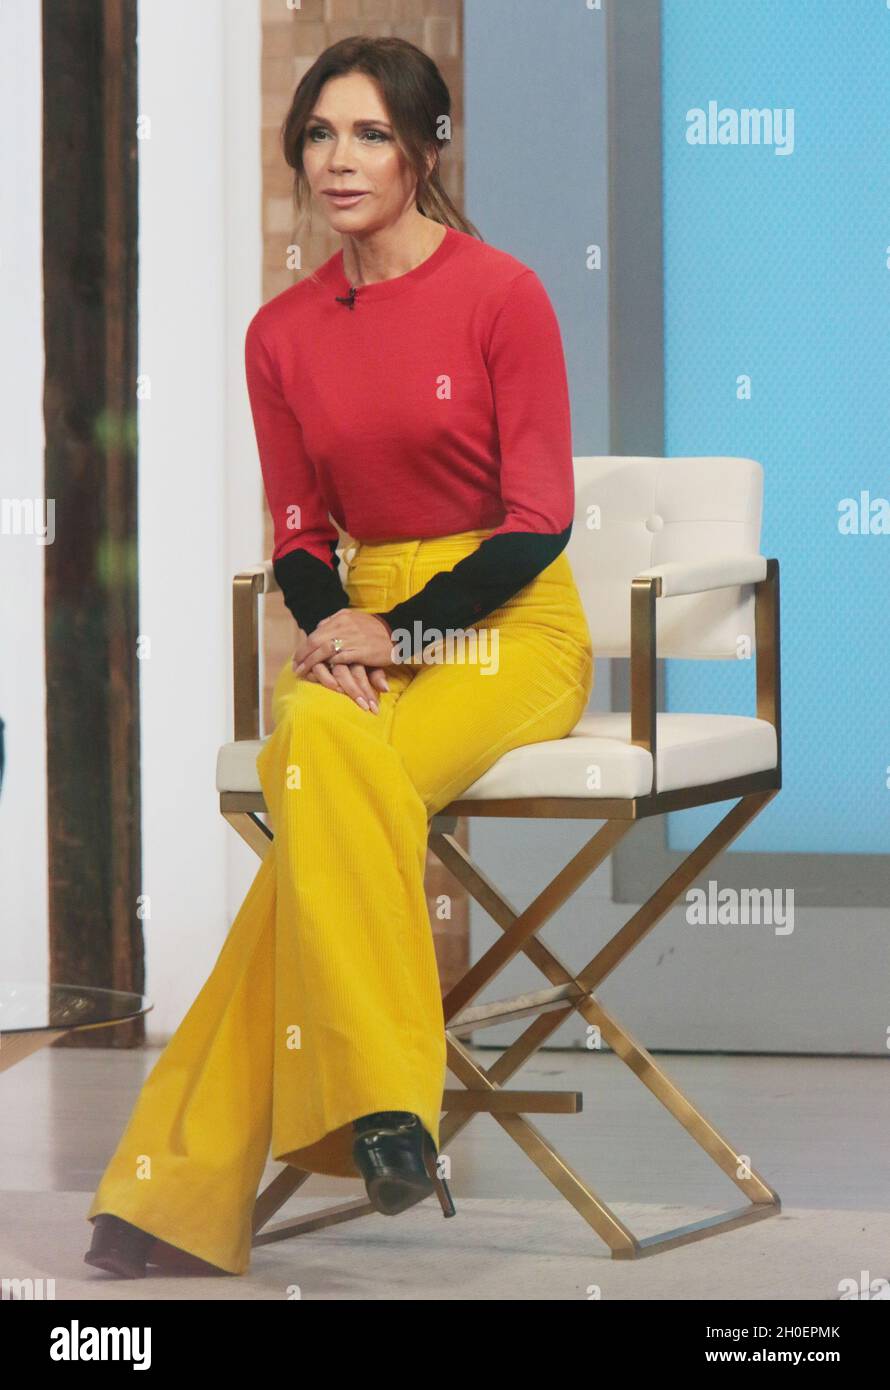 Nueva York, NY, EE.UU. 12th Oct, 2021. Victoria Beckham en Good Morning  America promocionando su nueva ropa de diseño, zapatos, bolsos de mano y la  línea de arreglo en la ciudad de